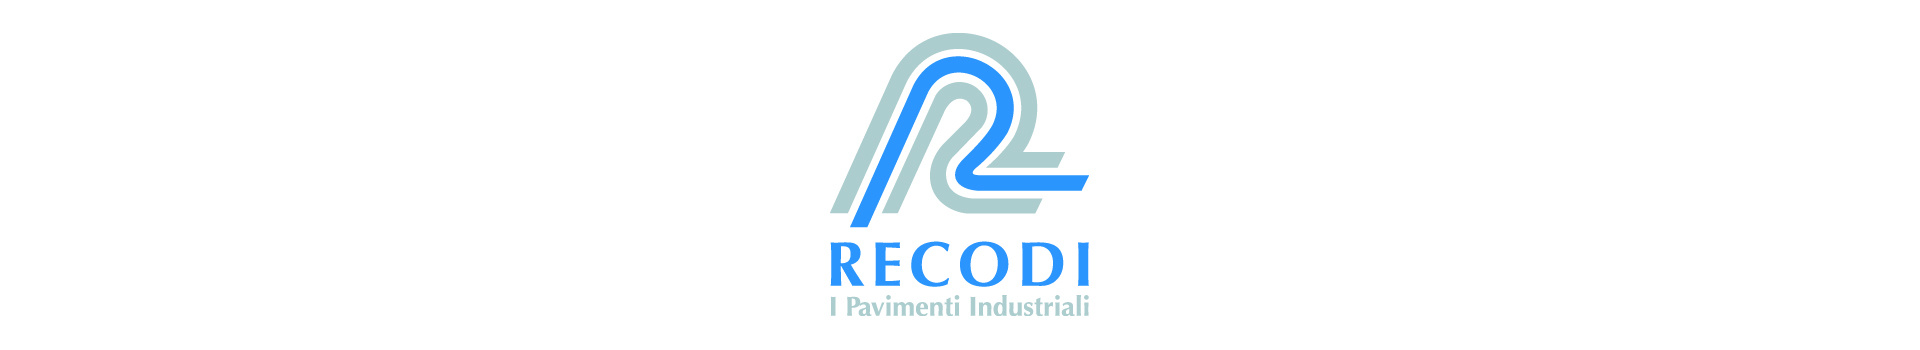 Recodi - Silver Sponsor